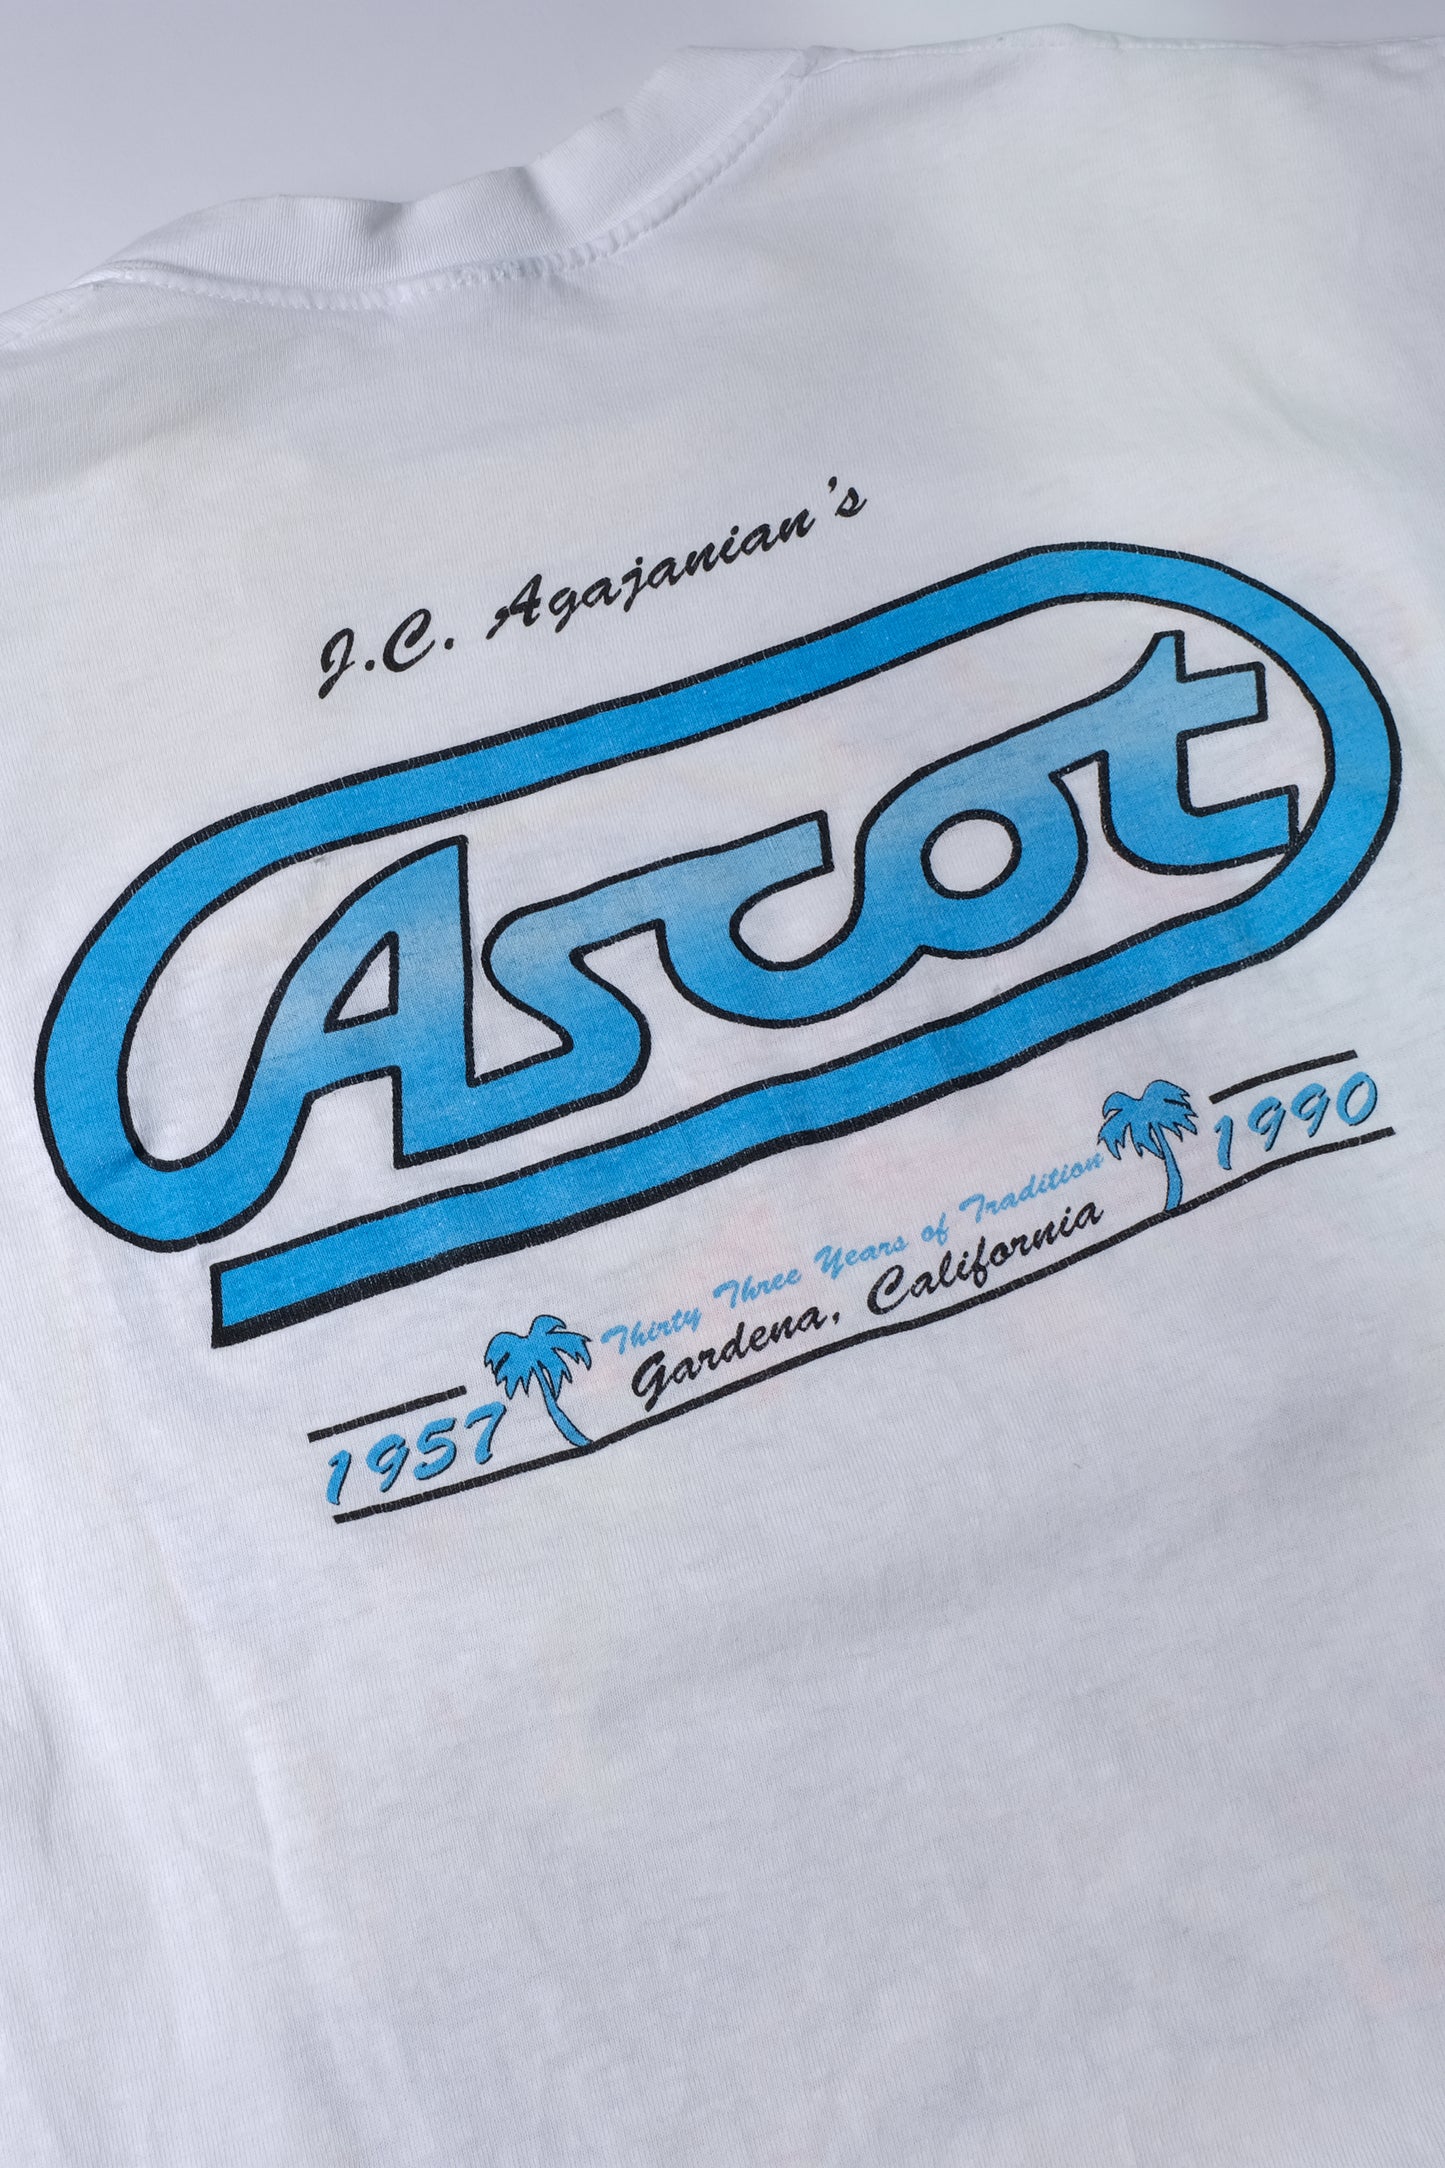 Vintage 1990 Ascot Racing Tee